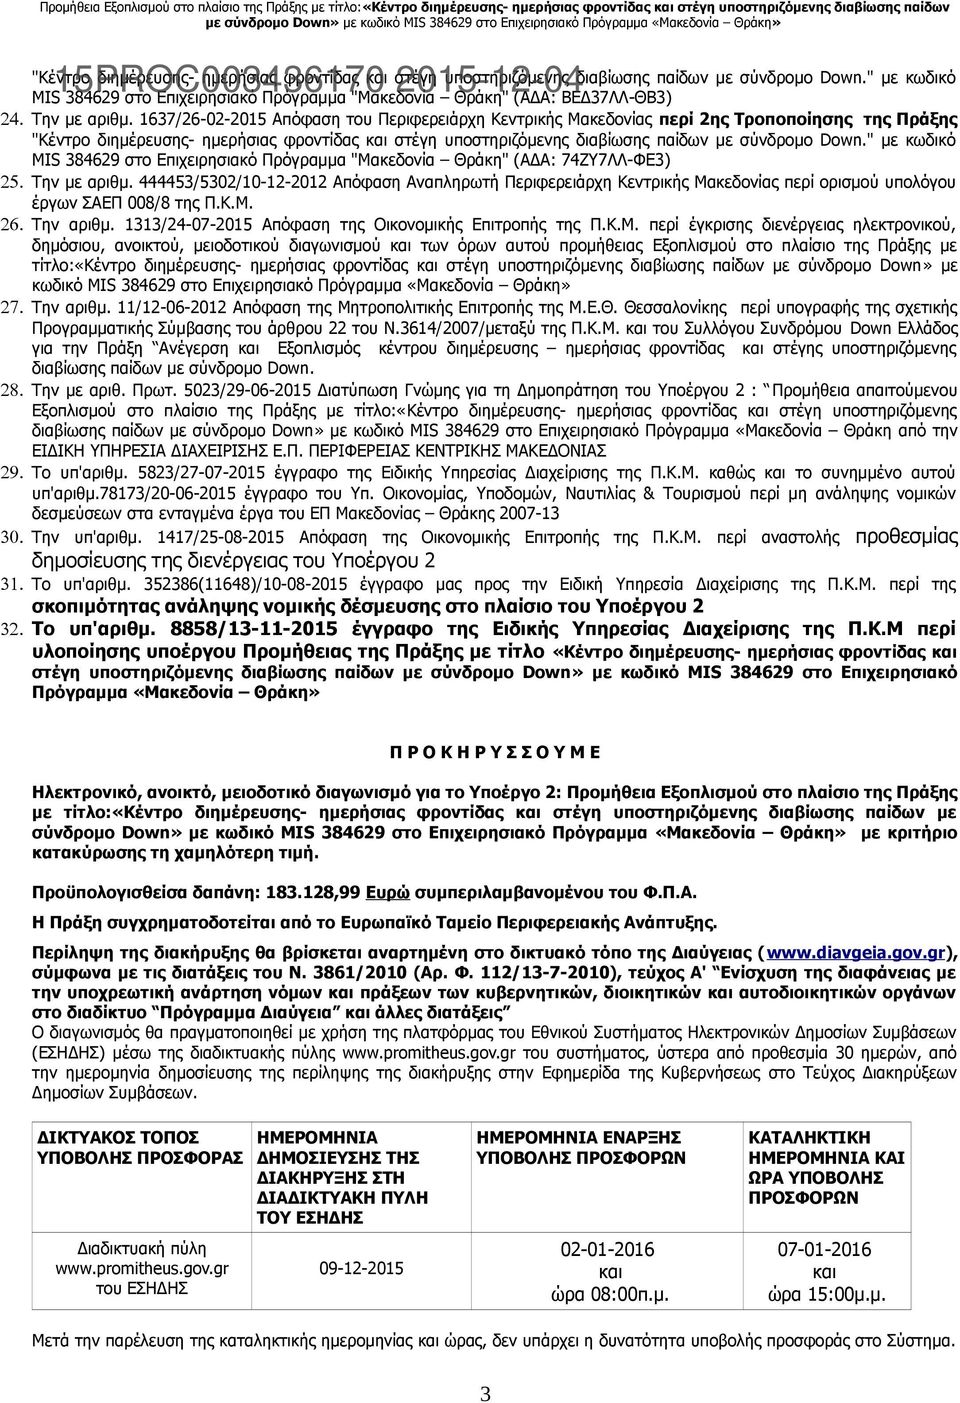 1637/26-02-2015 Απόφαση του Περιφερειάρχη Κεντρικής Μακεδονίας περί 2ης Τροποποίησης της Πράξης "Κέντρο διημέρευσης- ημερήσιας φροντίδας και στέγη υποστηριζόμενης διαβίωσης παίδων με σύνδρομο Down.